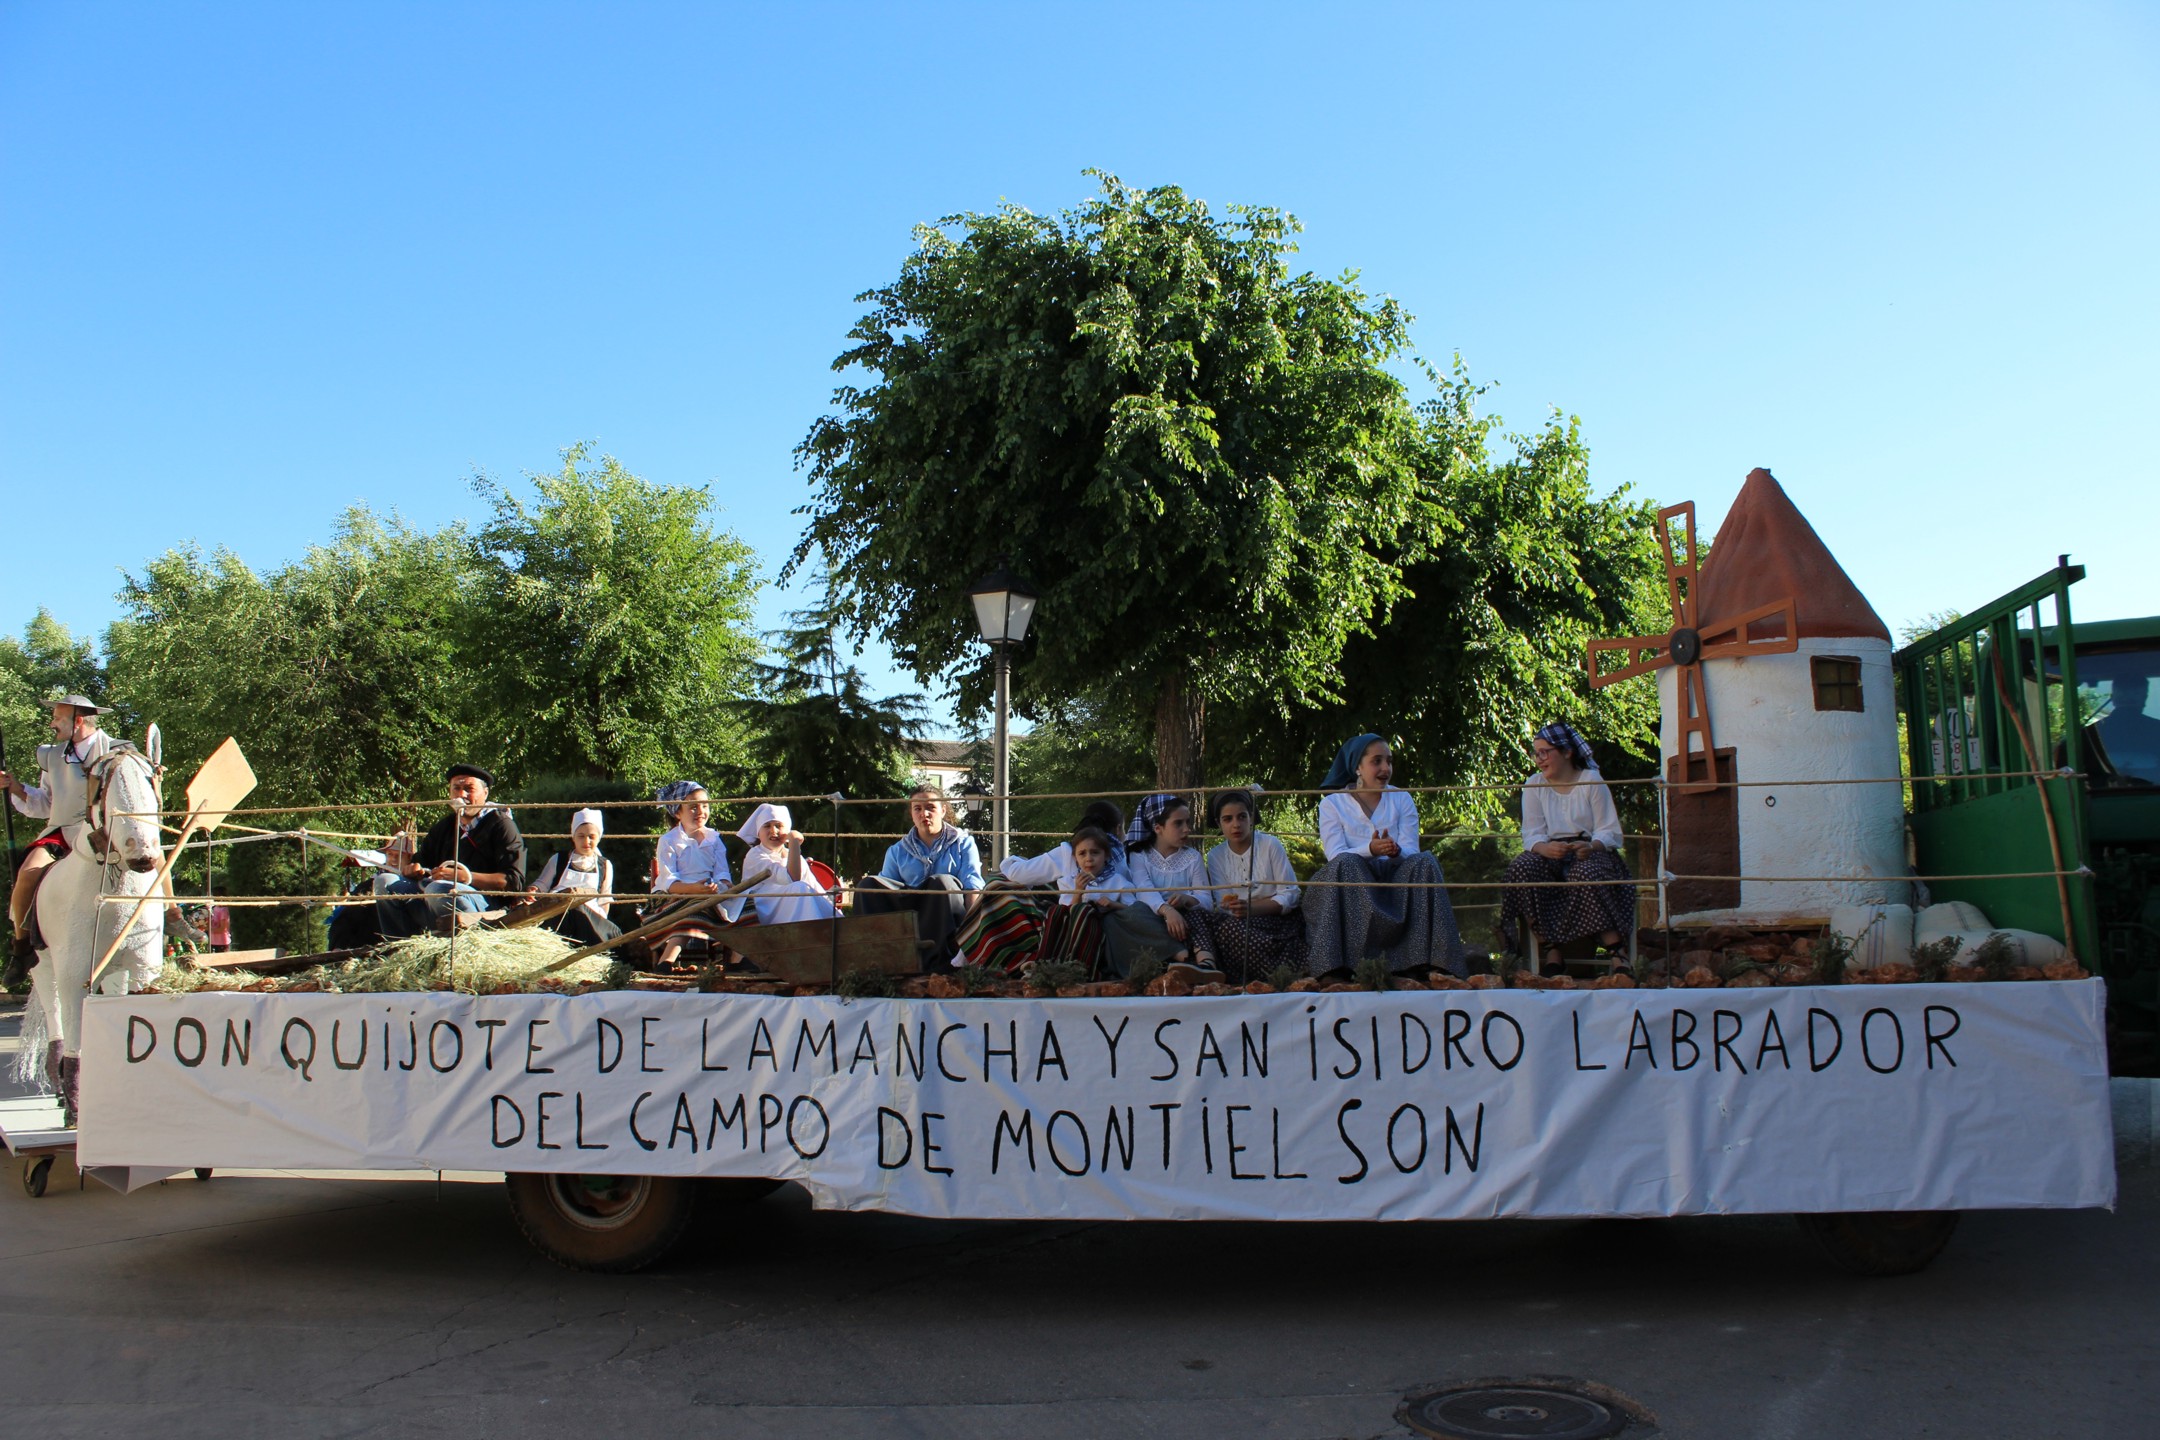 Carrozas, yuntas y tractores acompañan a San Isidro en procesión en Villanueva de los Infantes